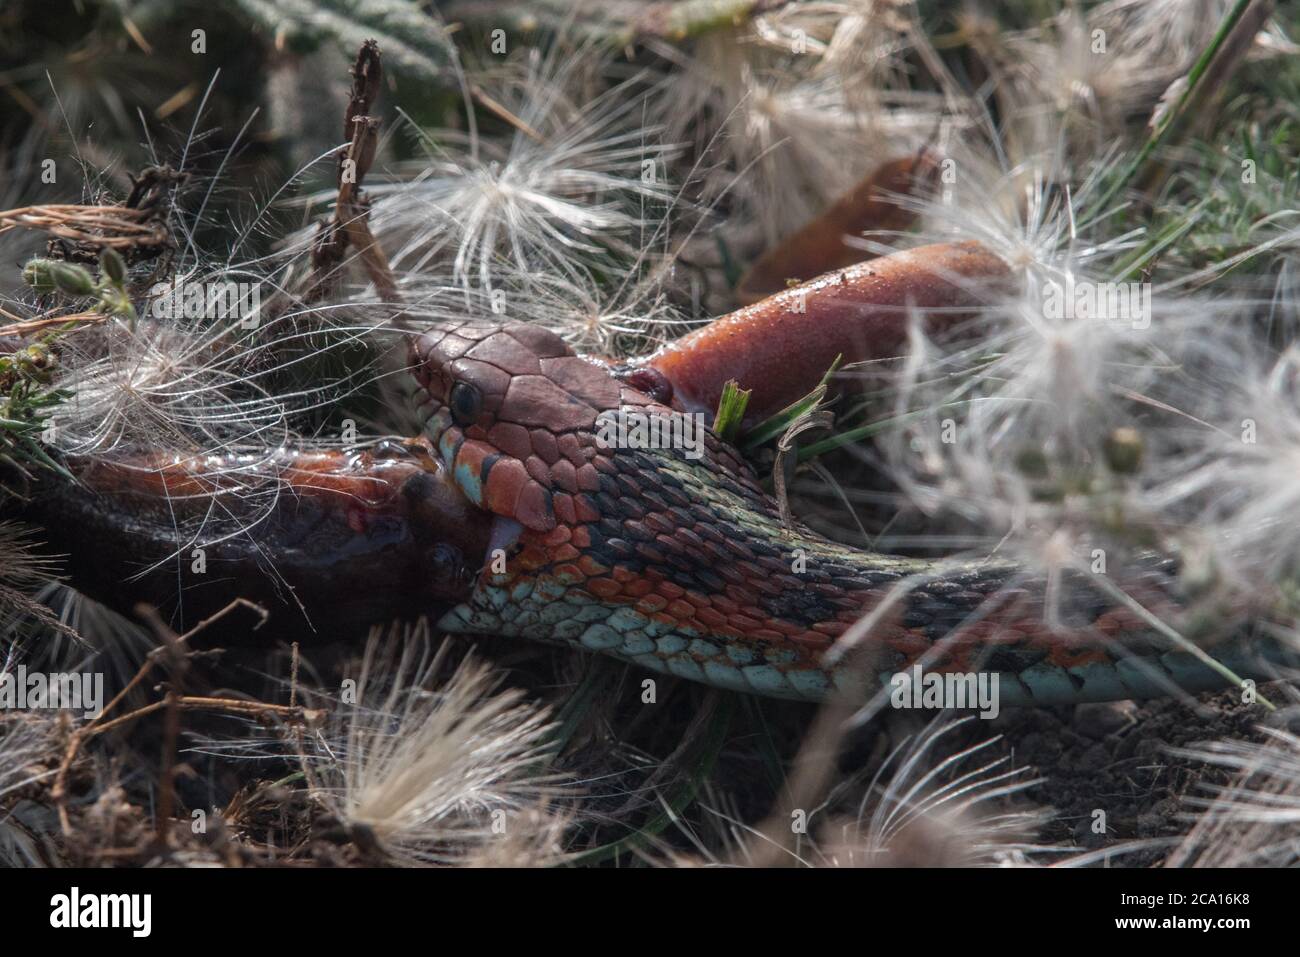 Un gartersnake californiano dal lato rosso (Thamnophis sirtalis infernalis) che mangia un novello (Taricha torosa), 1 di pochi predatori che possono maneggiare le tossine nuove. Foto Stock